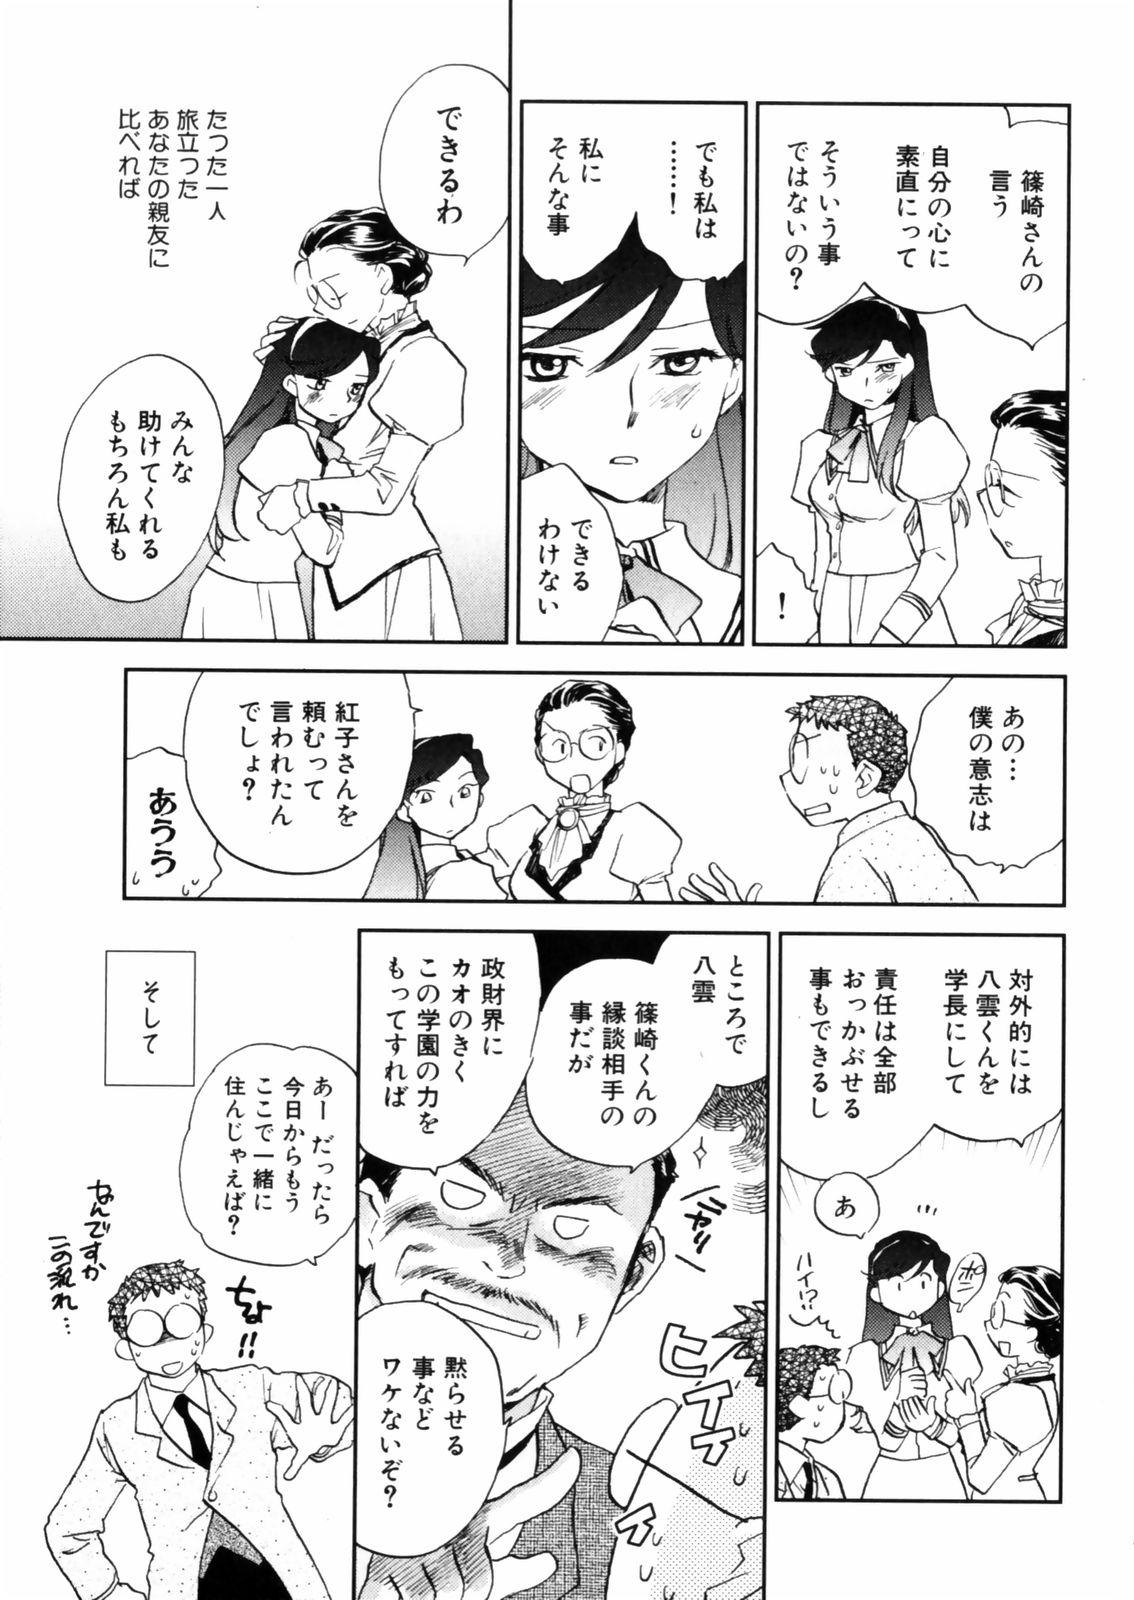 [Okano Ahiru] Hanasake ! Otome Juku (Otome Private Tutoring School) Vol.2 132